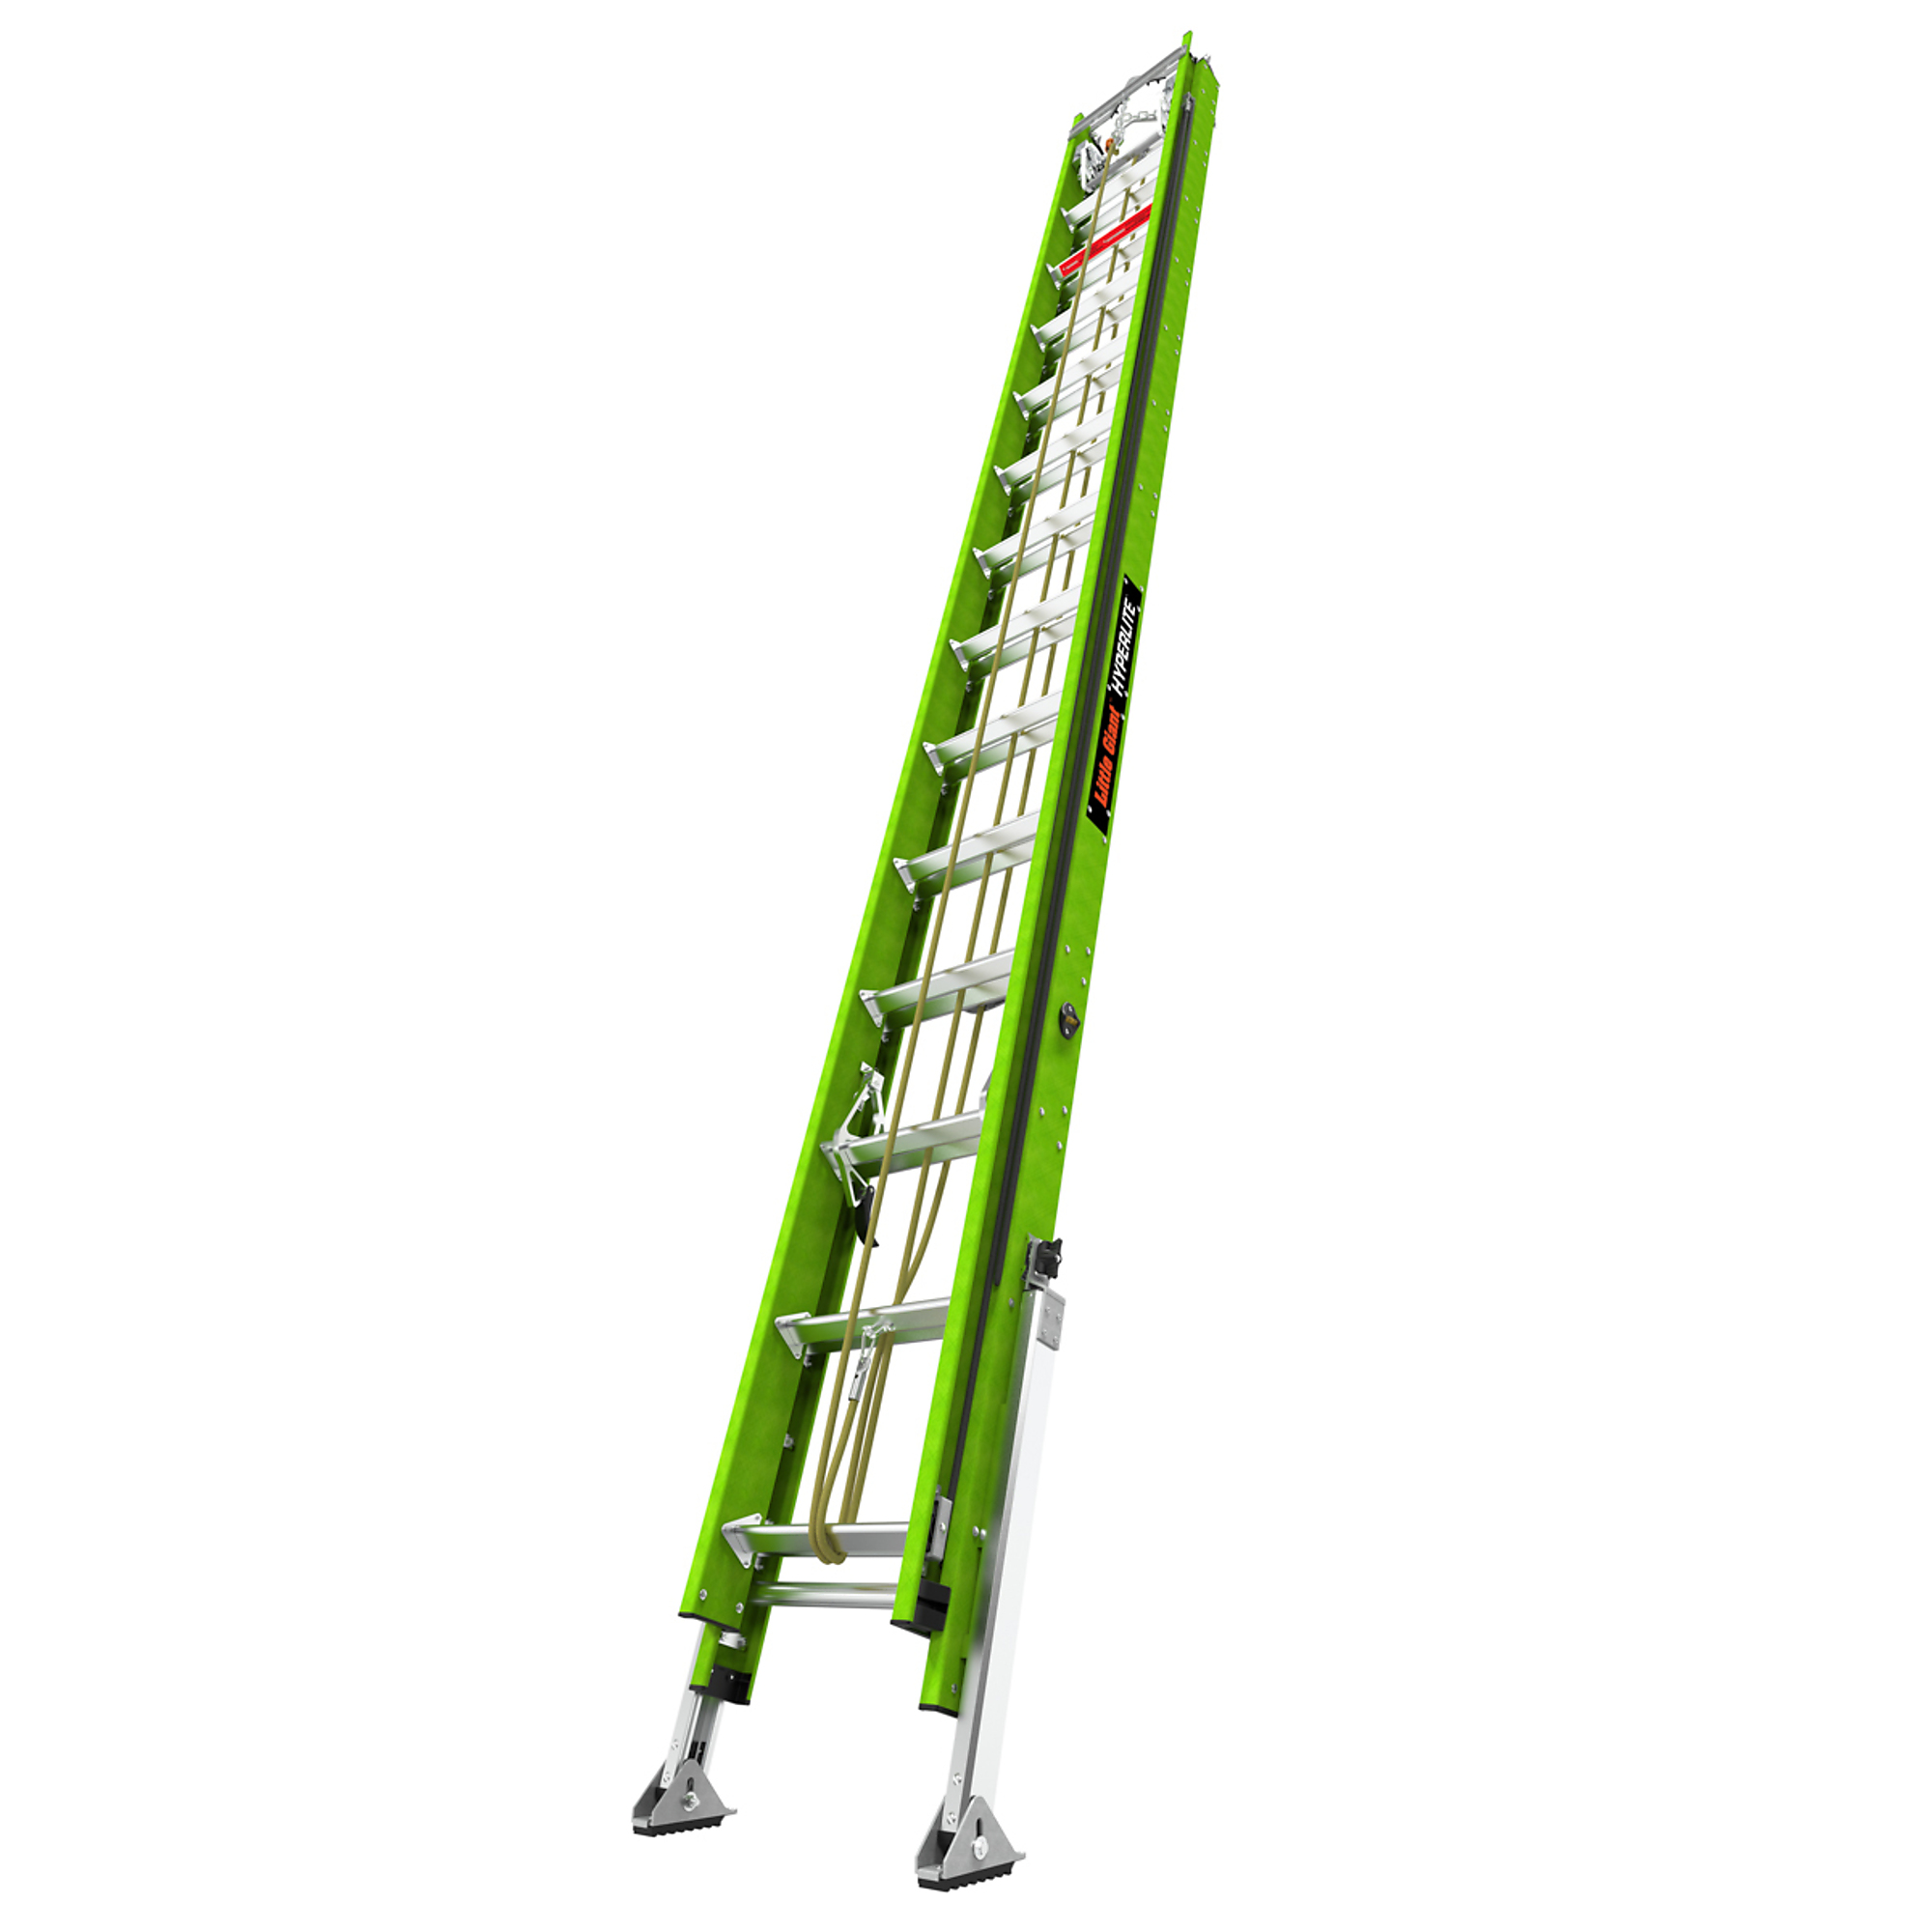 Little Giant Ladder, HYPERLITE 28 Ext Lad Hok Vbar Line autolevel PETZL, Height 28 ft, Capacity 375 lb, Material Fiberglass, Model 17528-285